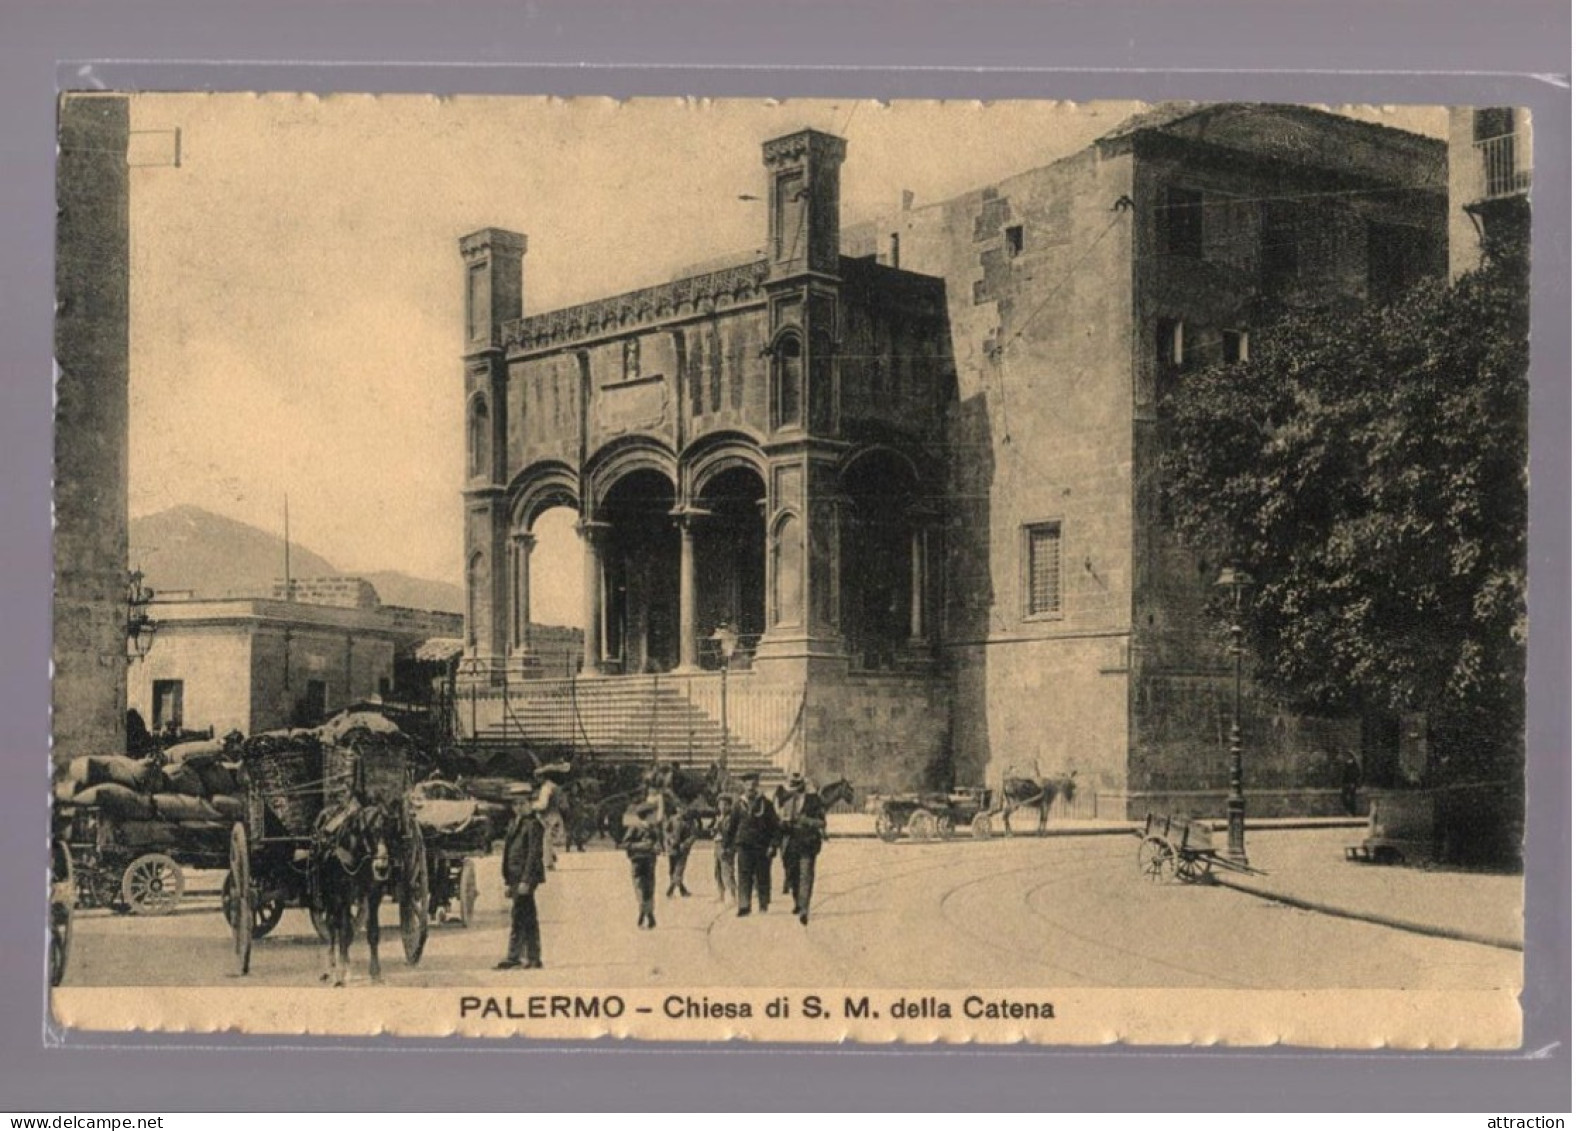 PALERMO CHIESA DI S.M. DELLA CATENA - Palermo